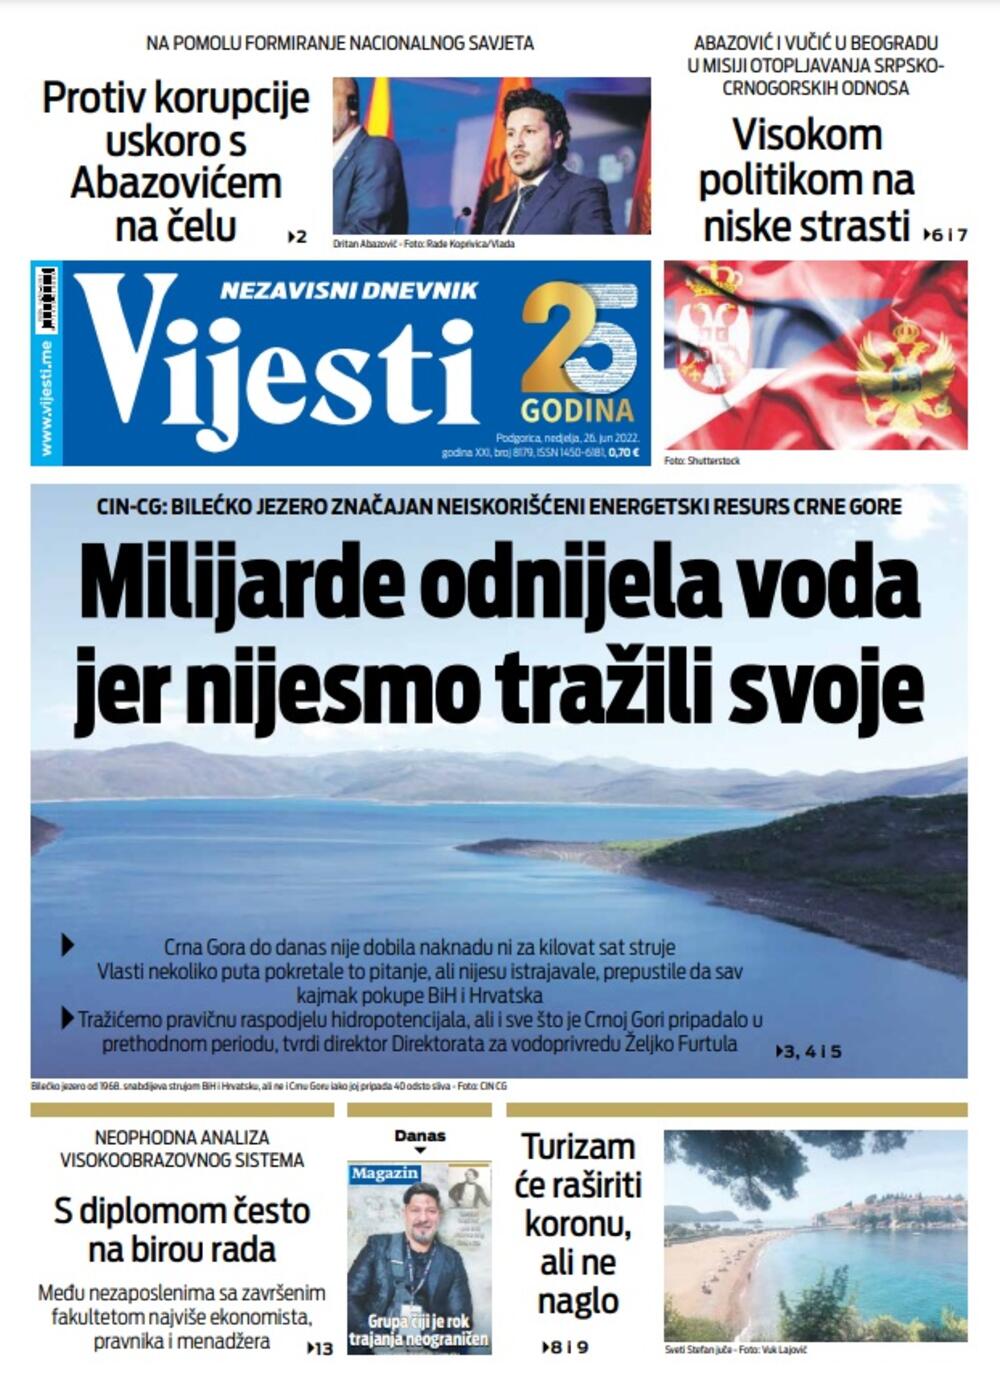 Naslovna strana "Vijesti" za 26. jun 2022. godine, Foto: Vijesti